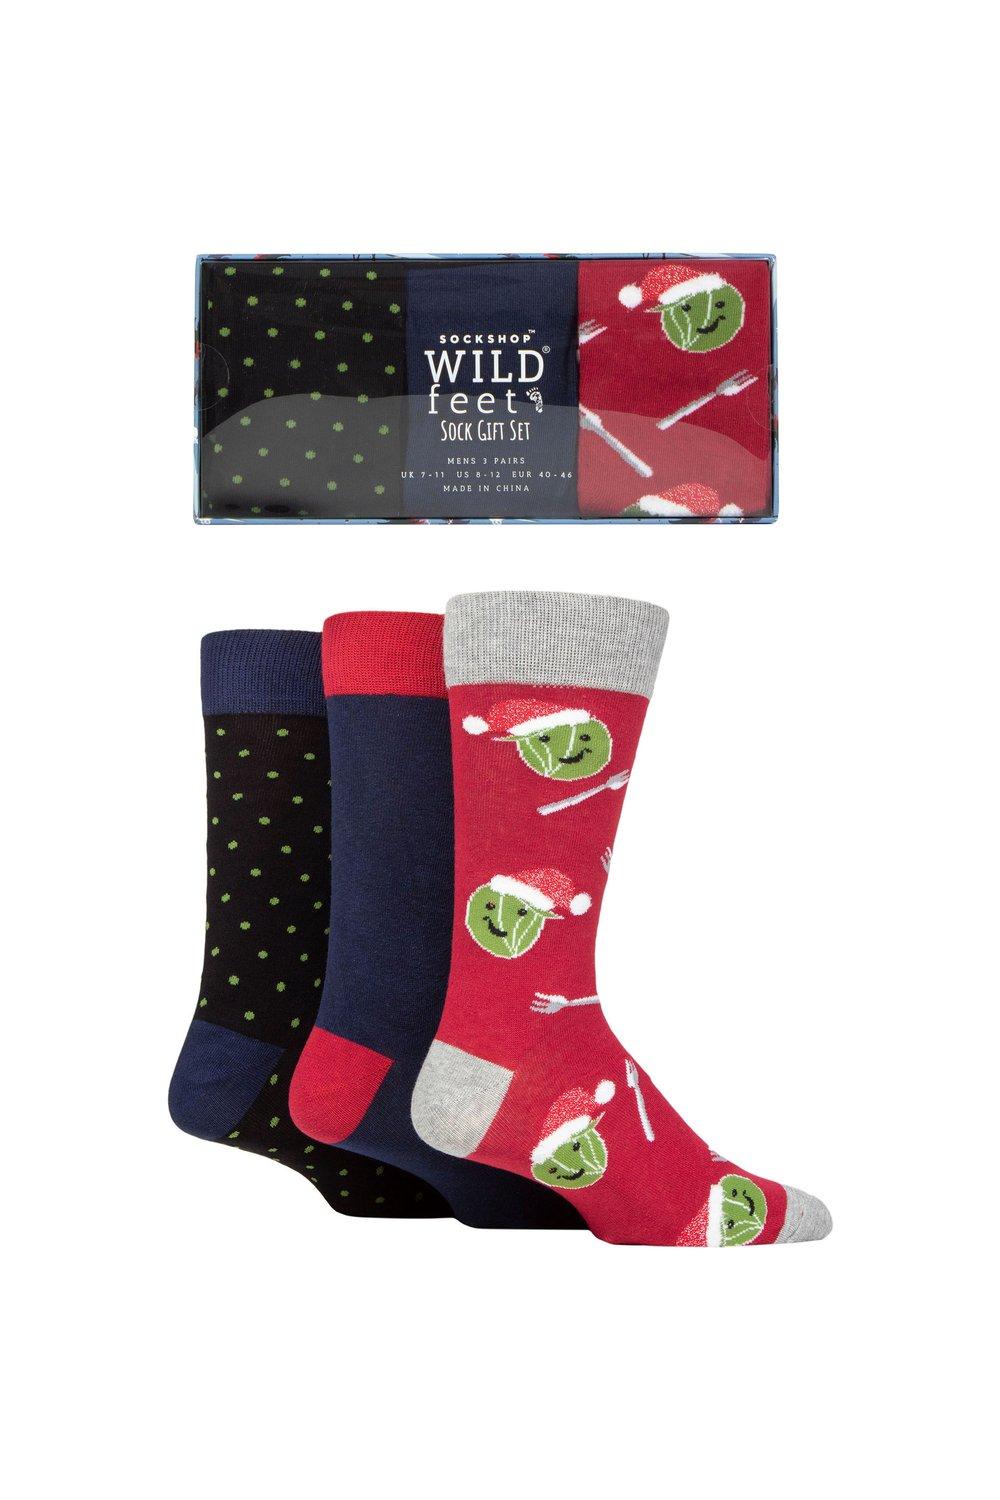 3 пары носков в подарочной упаковке winter wonderland christmas cube sockshop wild feet мультиколор 3 пары рождественских плоских подарочных носков в упаковке SOCKSHOP Wild Feet, мультиколор